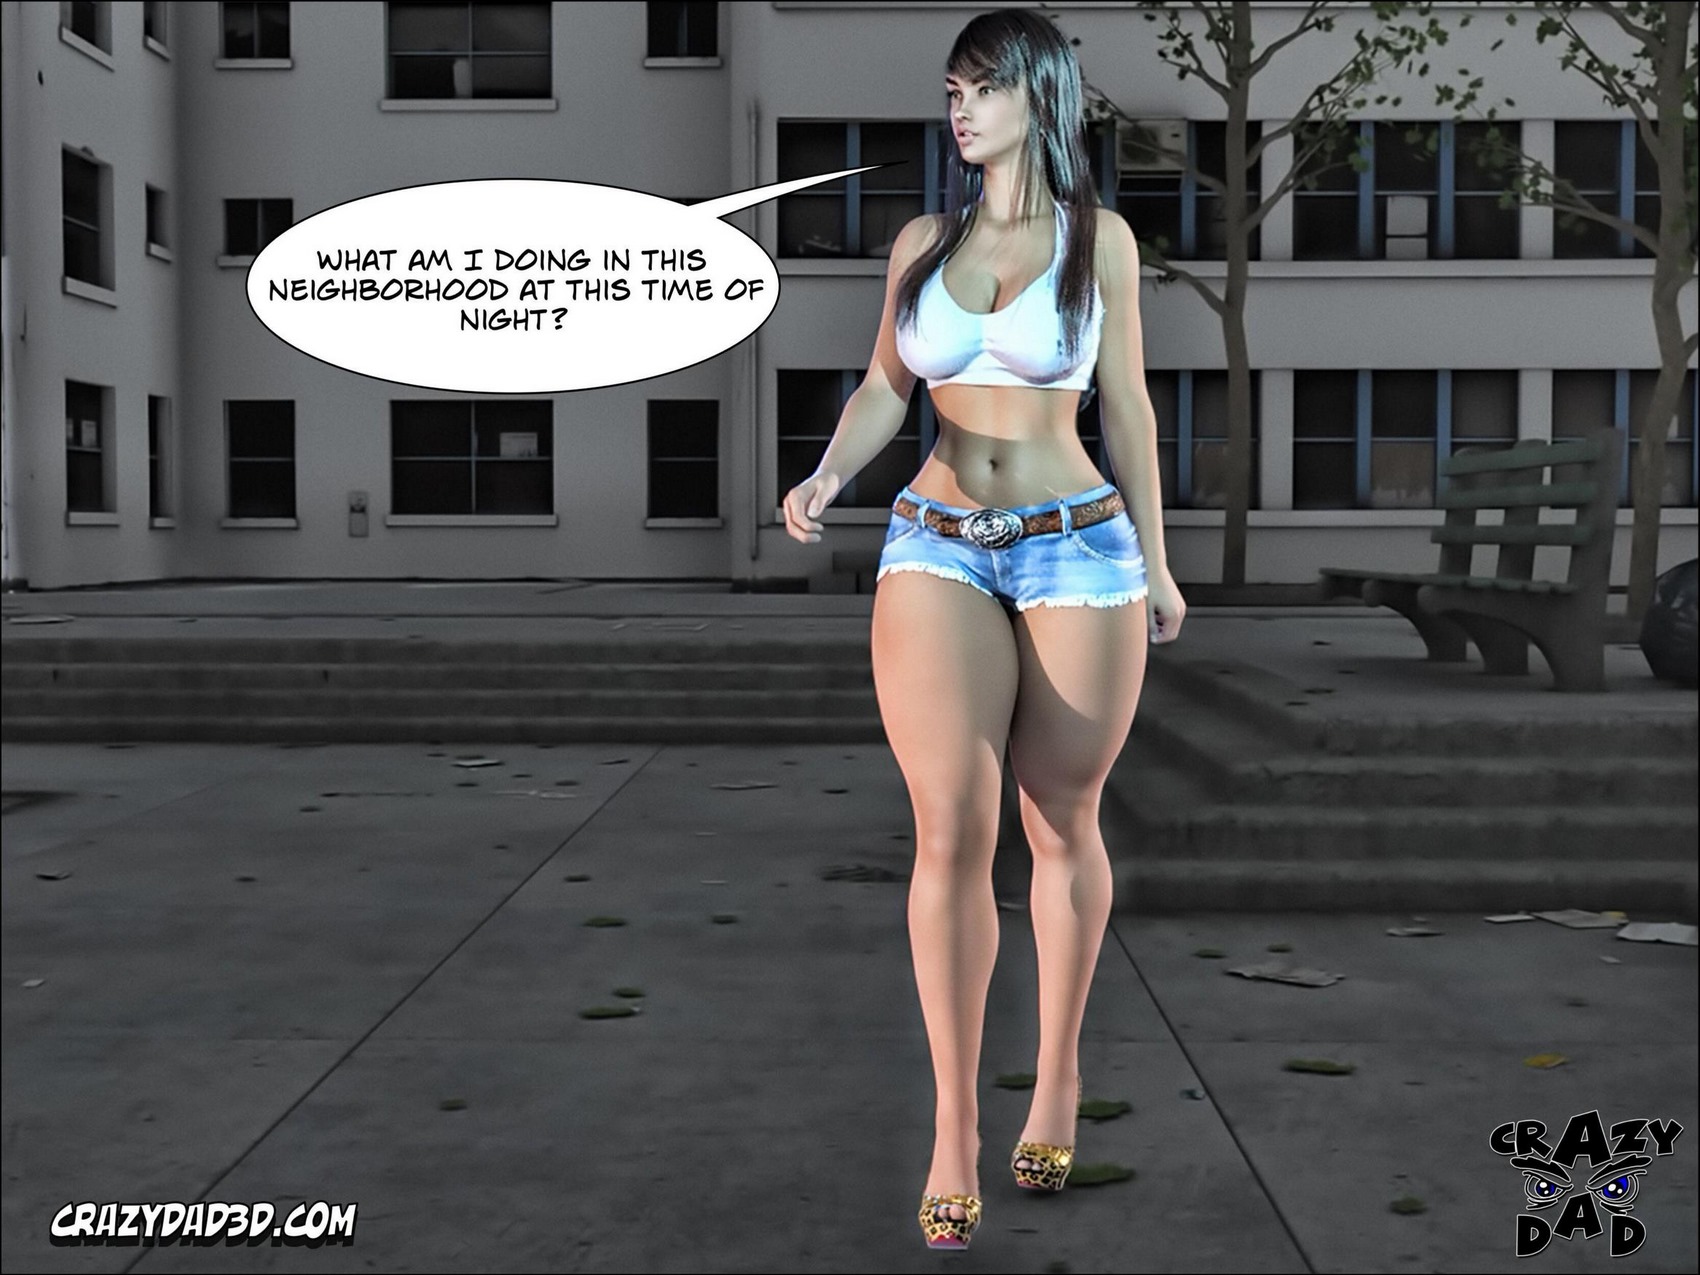 1700px x 1275px - Spank â€“ CrazyDad3D, Interracial Double Penetration Sex - Porn Comics